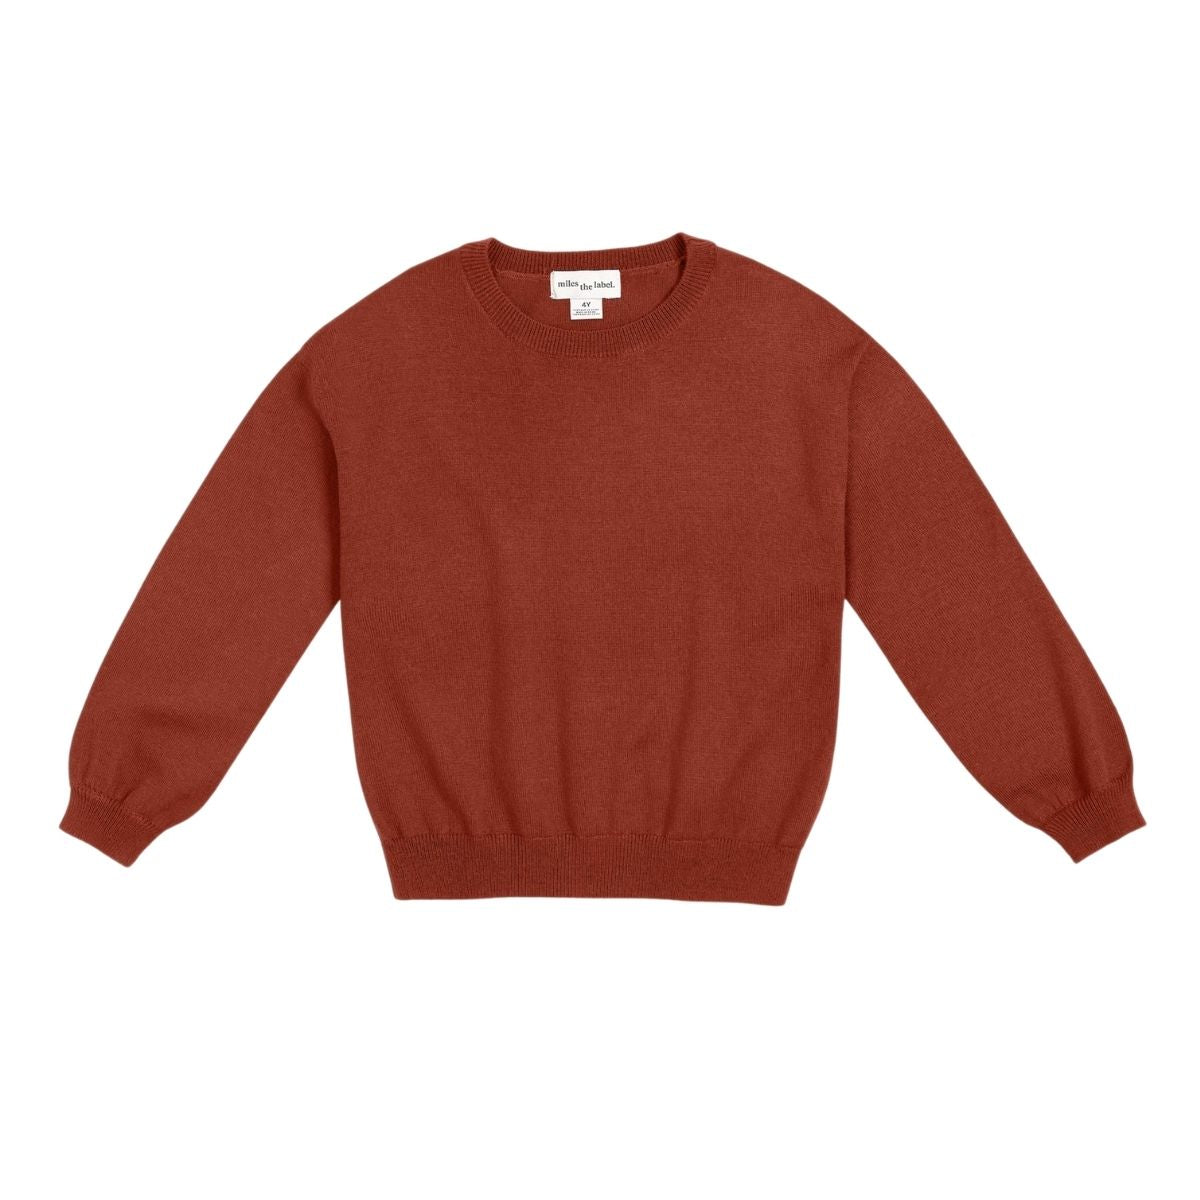 Henna Orange Responsible Merino Sweater